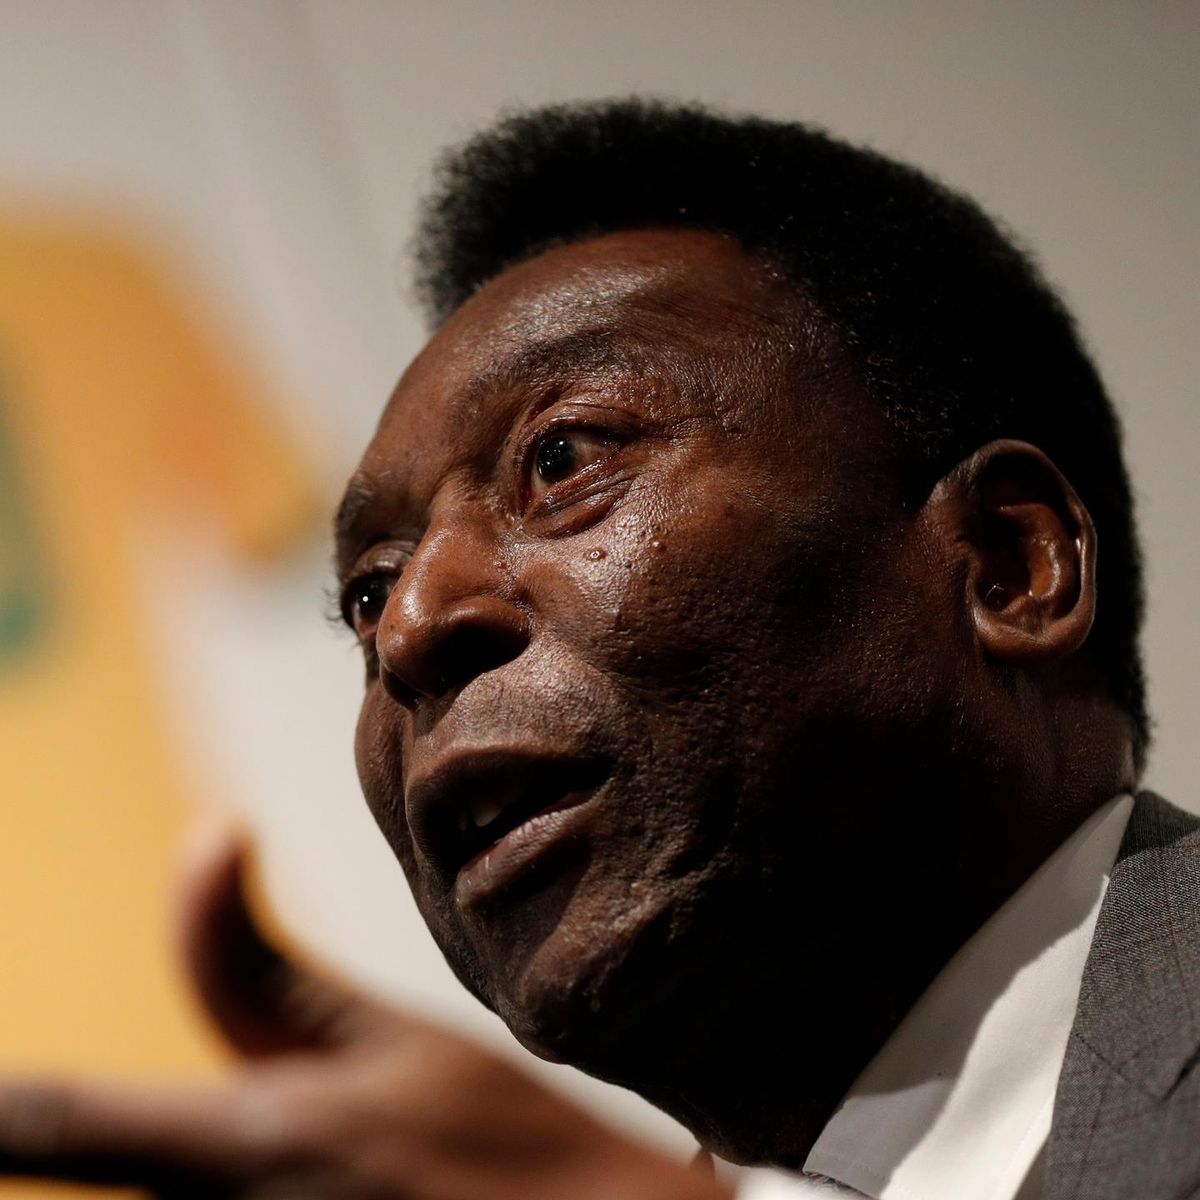 Le Roi est mort, Pelé décédé à l’âge de 82 ans